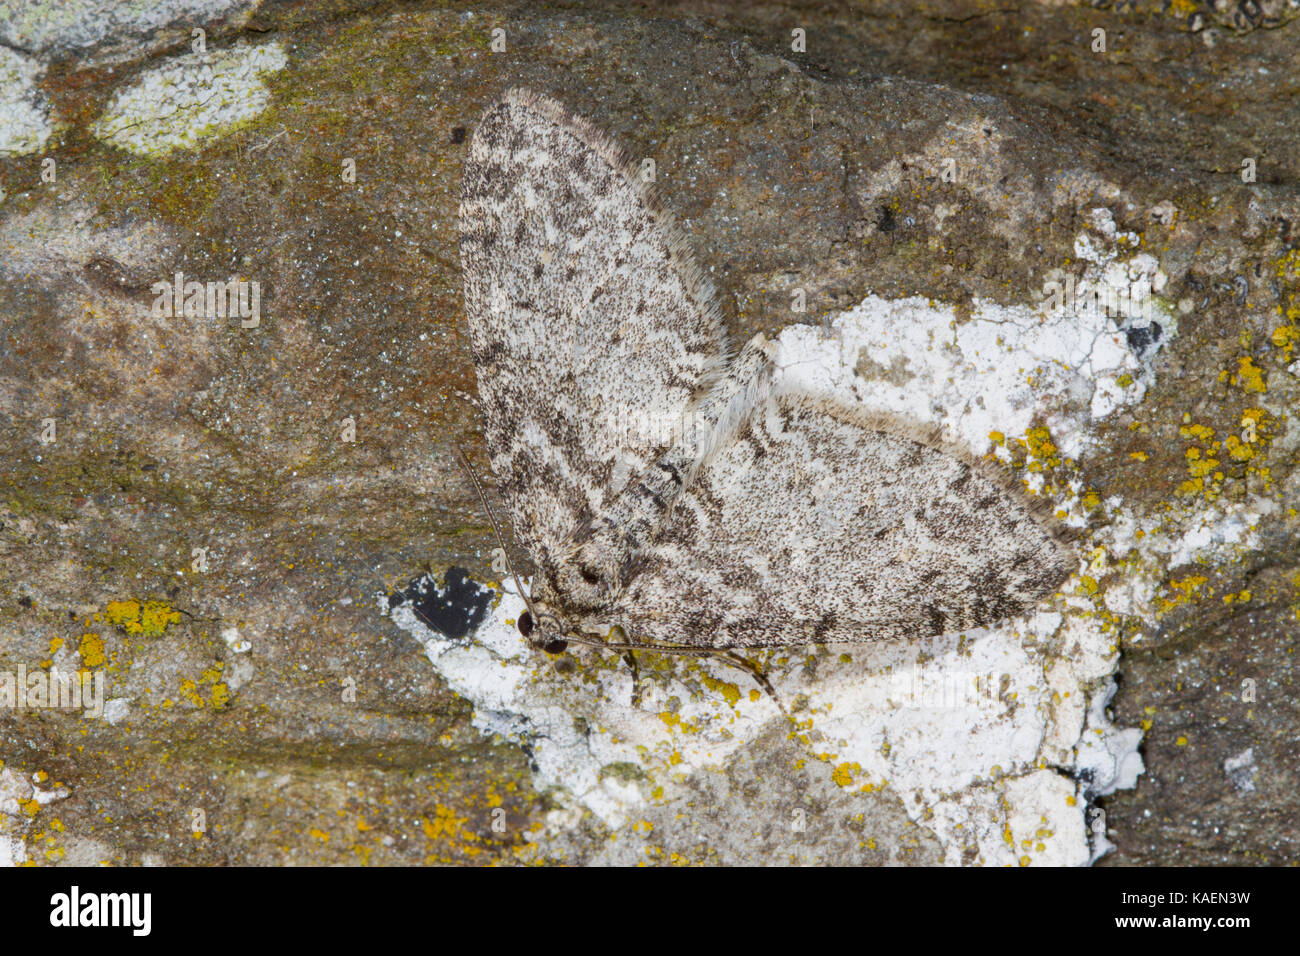 Les séraphins (Les halterata) papillon adulte reposant sur un mur de pierre. Powys, Pays de Galles. Mai. Banque D'Images